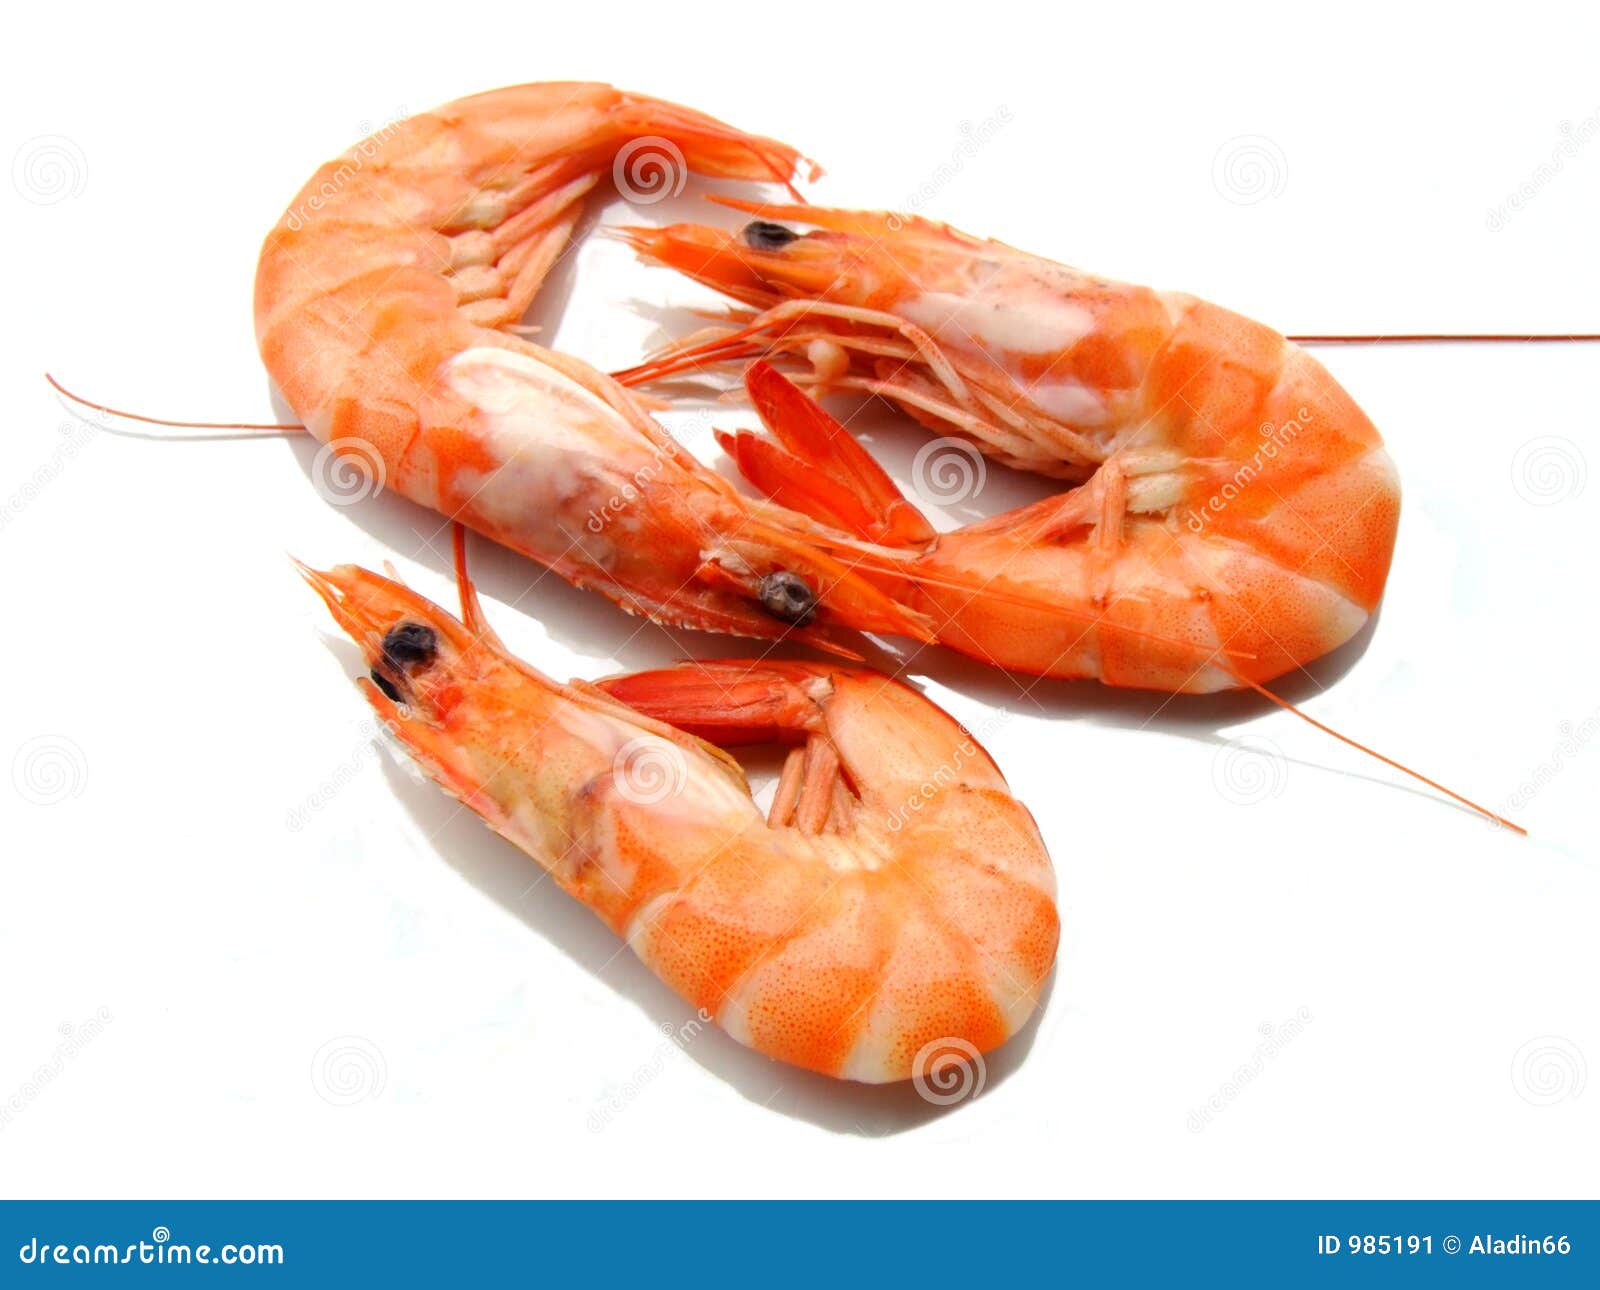 three shrimps